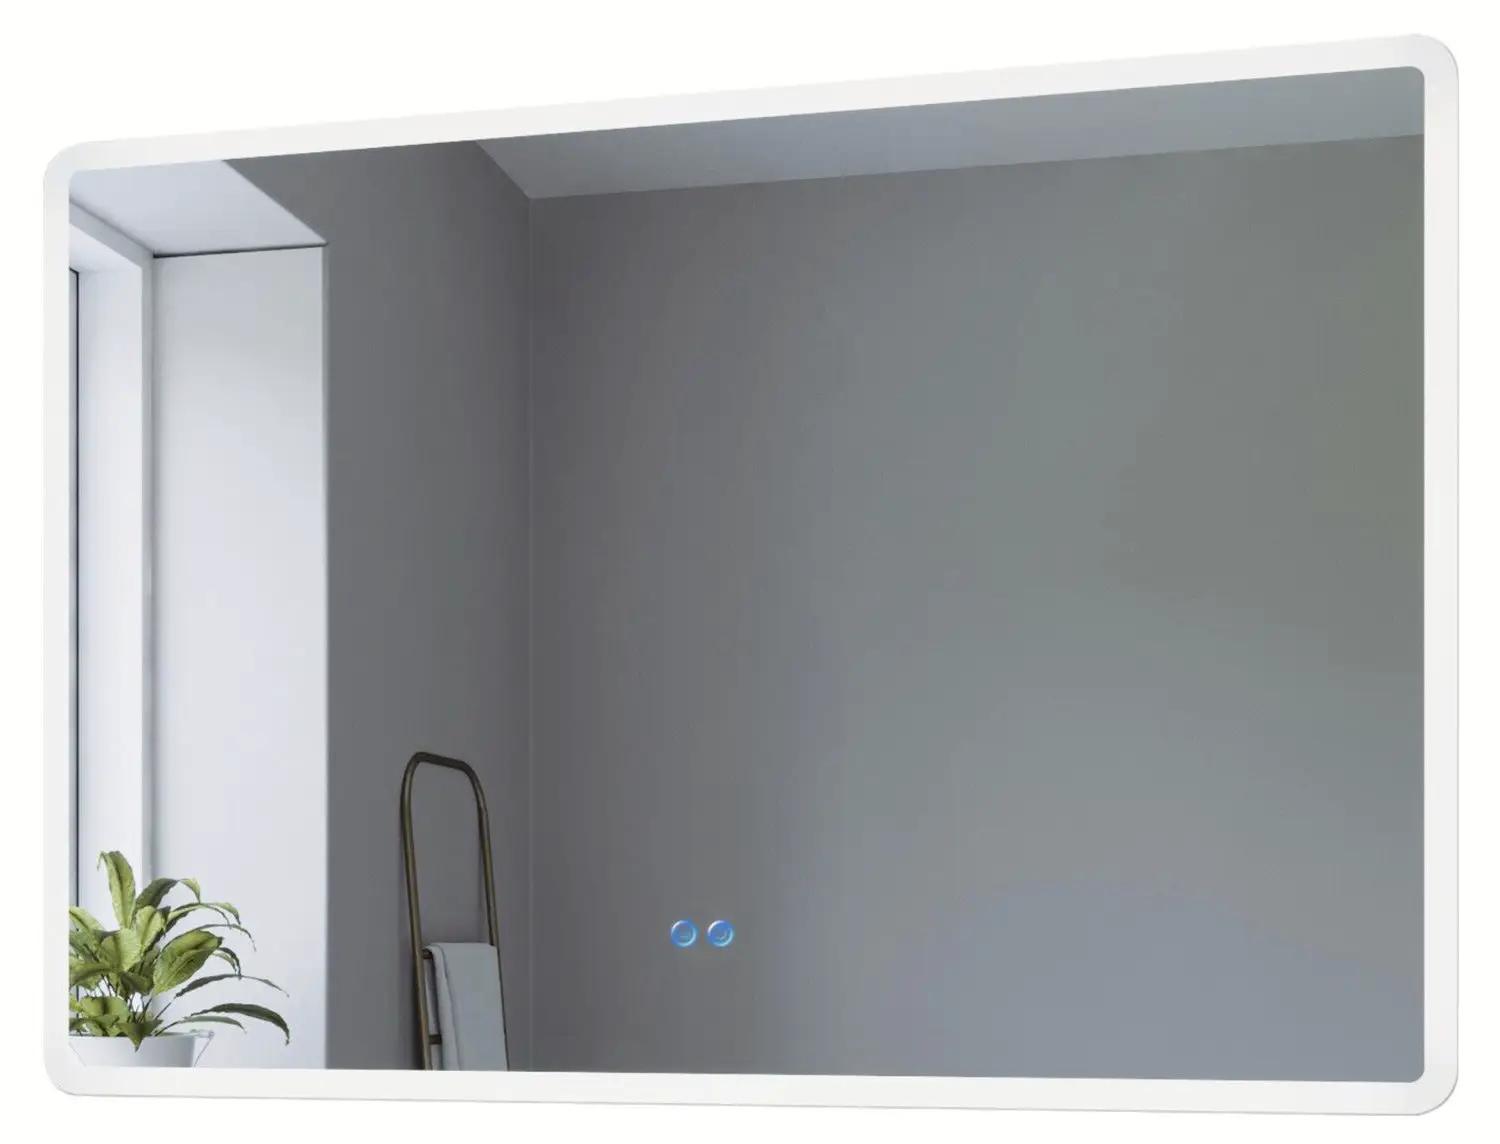 LED Badspiegel Beleuchtung Wandspiegel